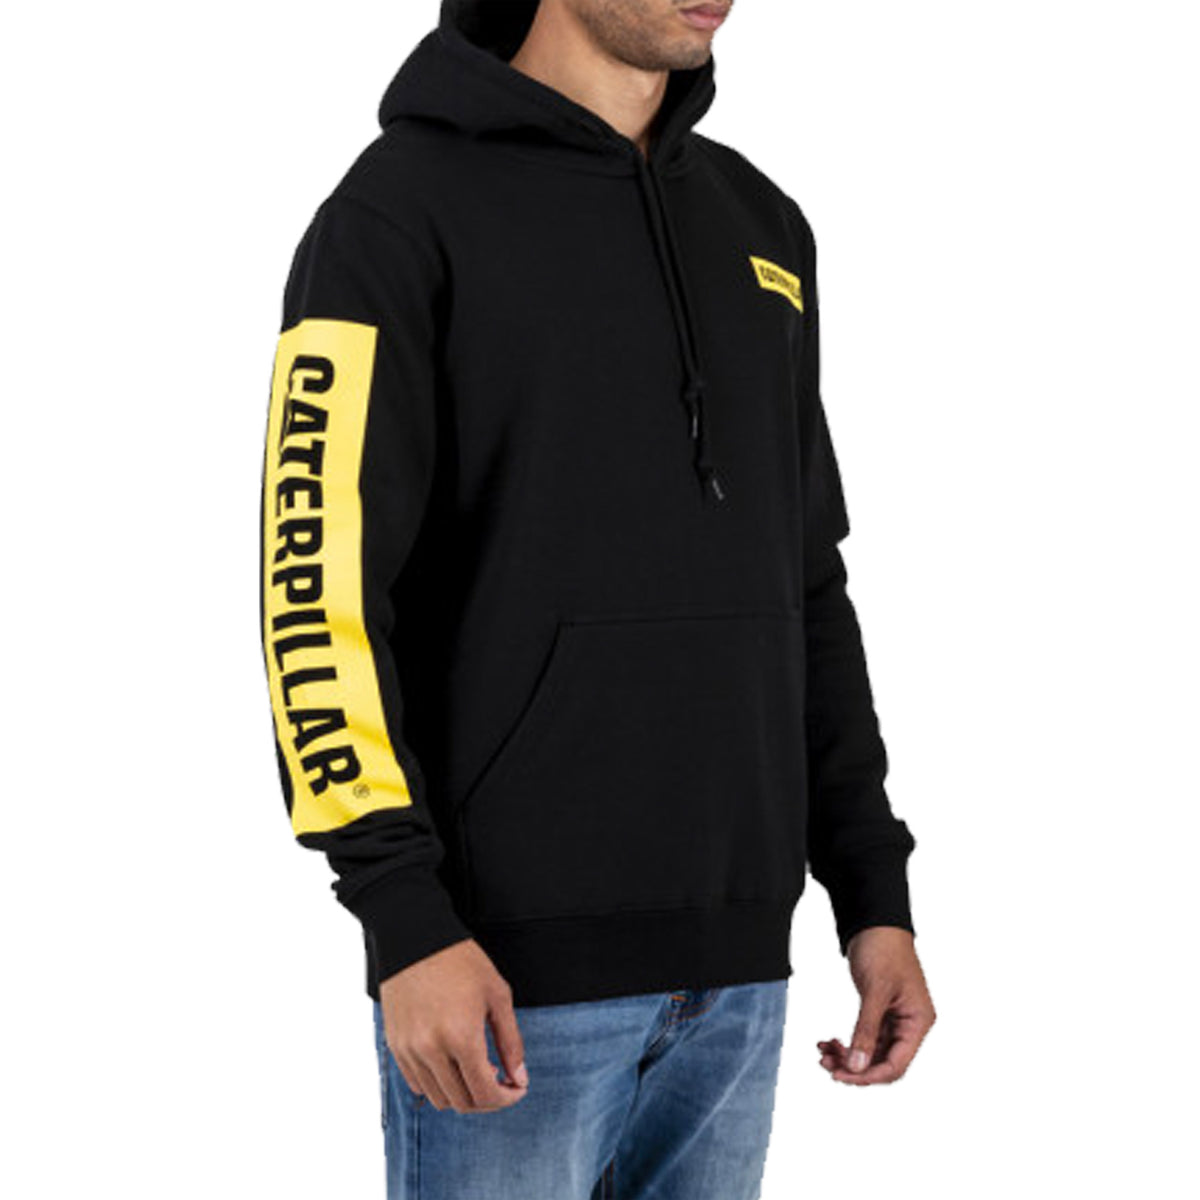 cat workwear triton block hoodie in black yellow